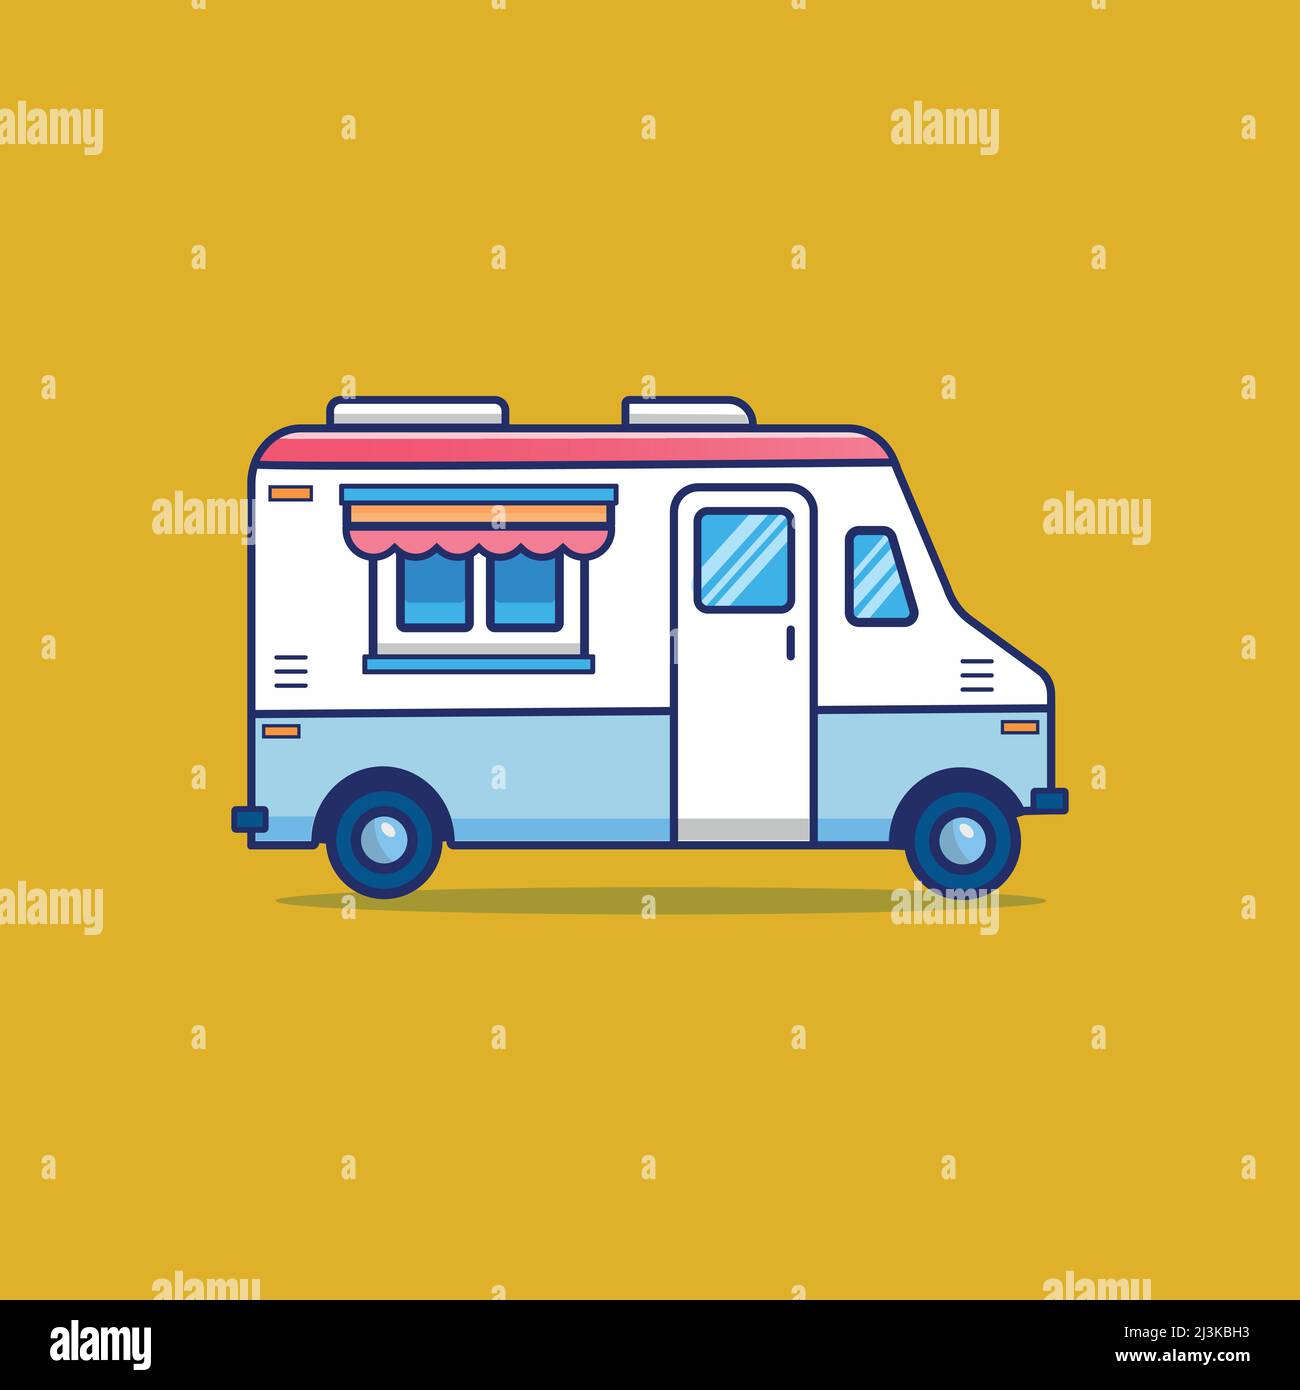 Street Food truck, Ice cream truck, Ice cream van illustration Stock ...